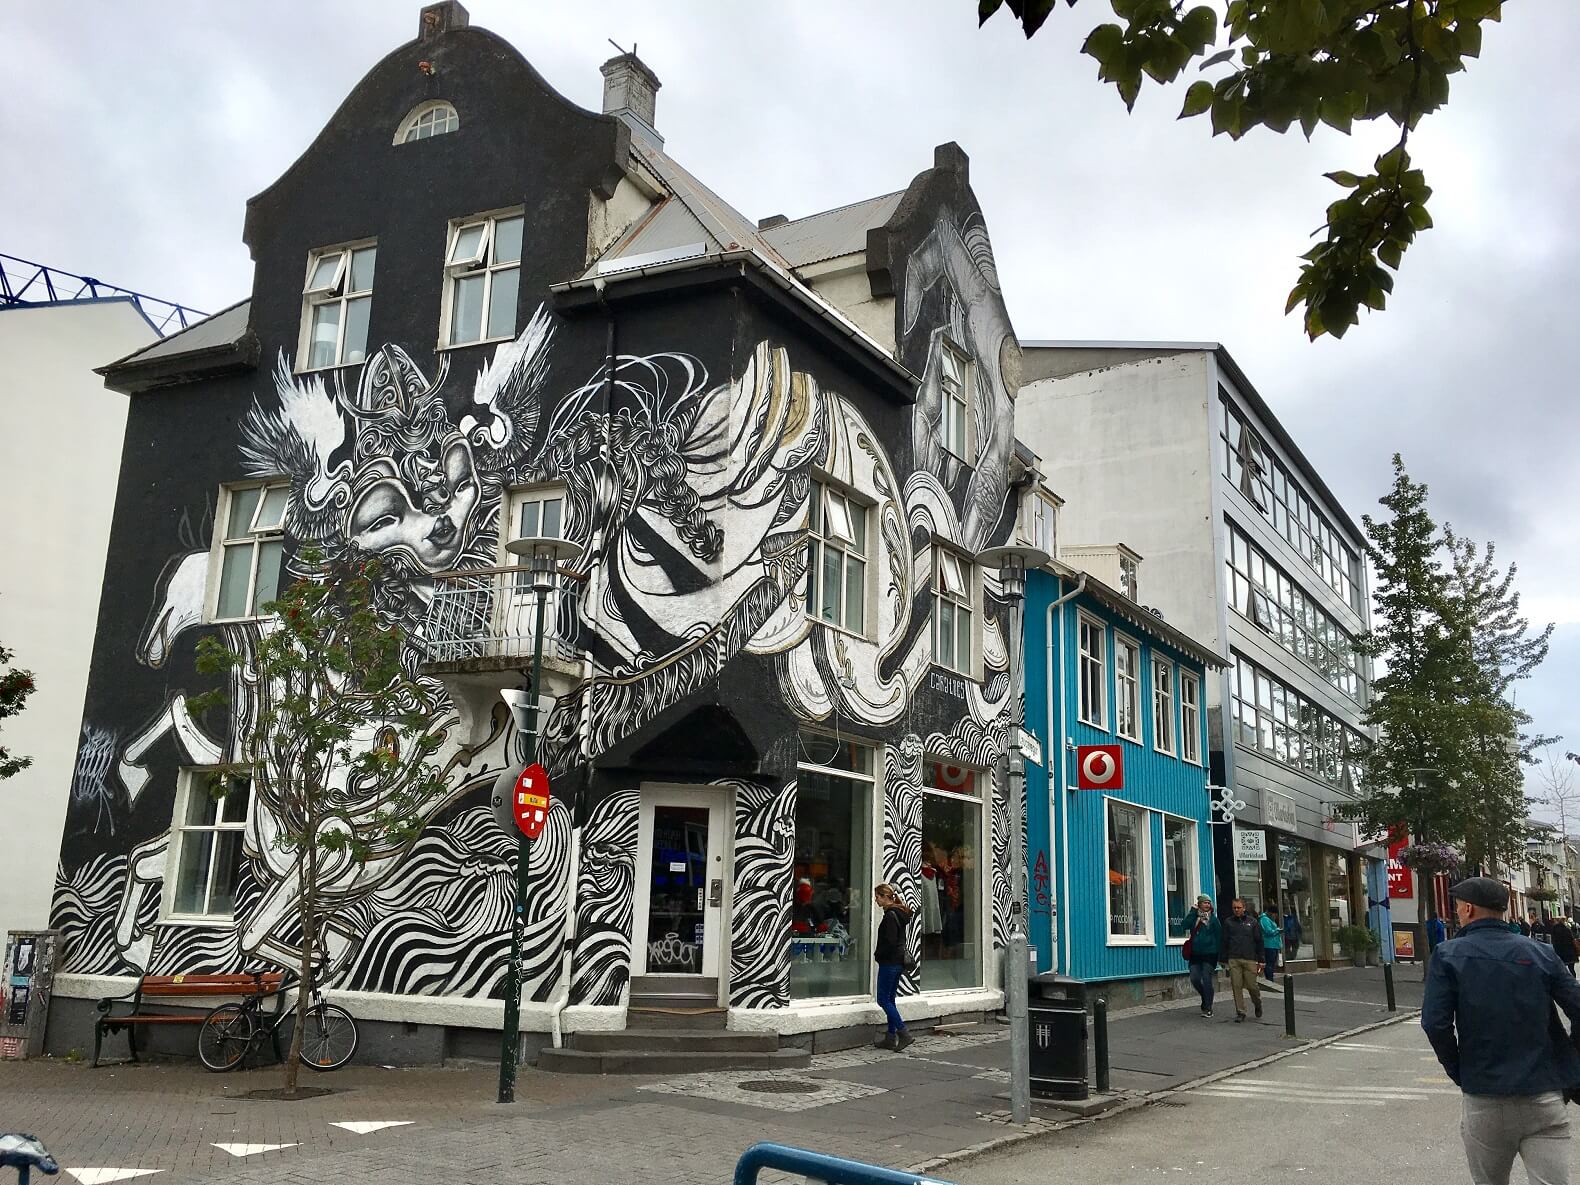 Street art in Iceland